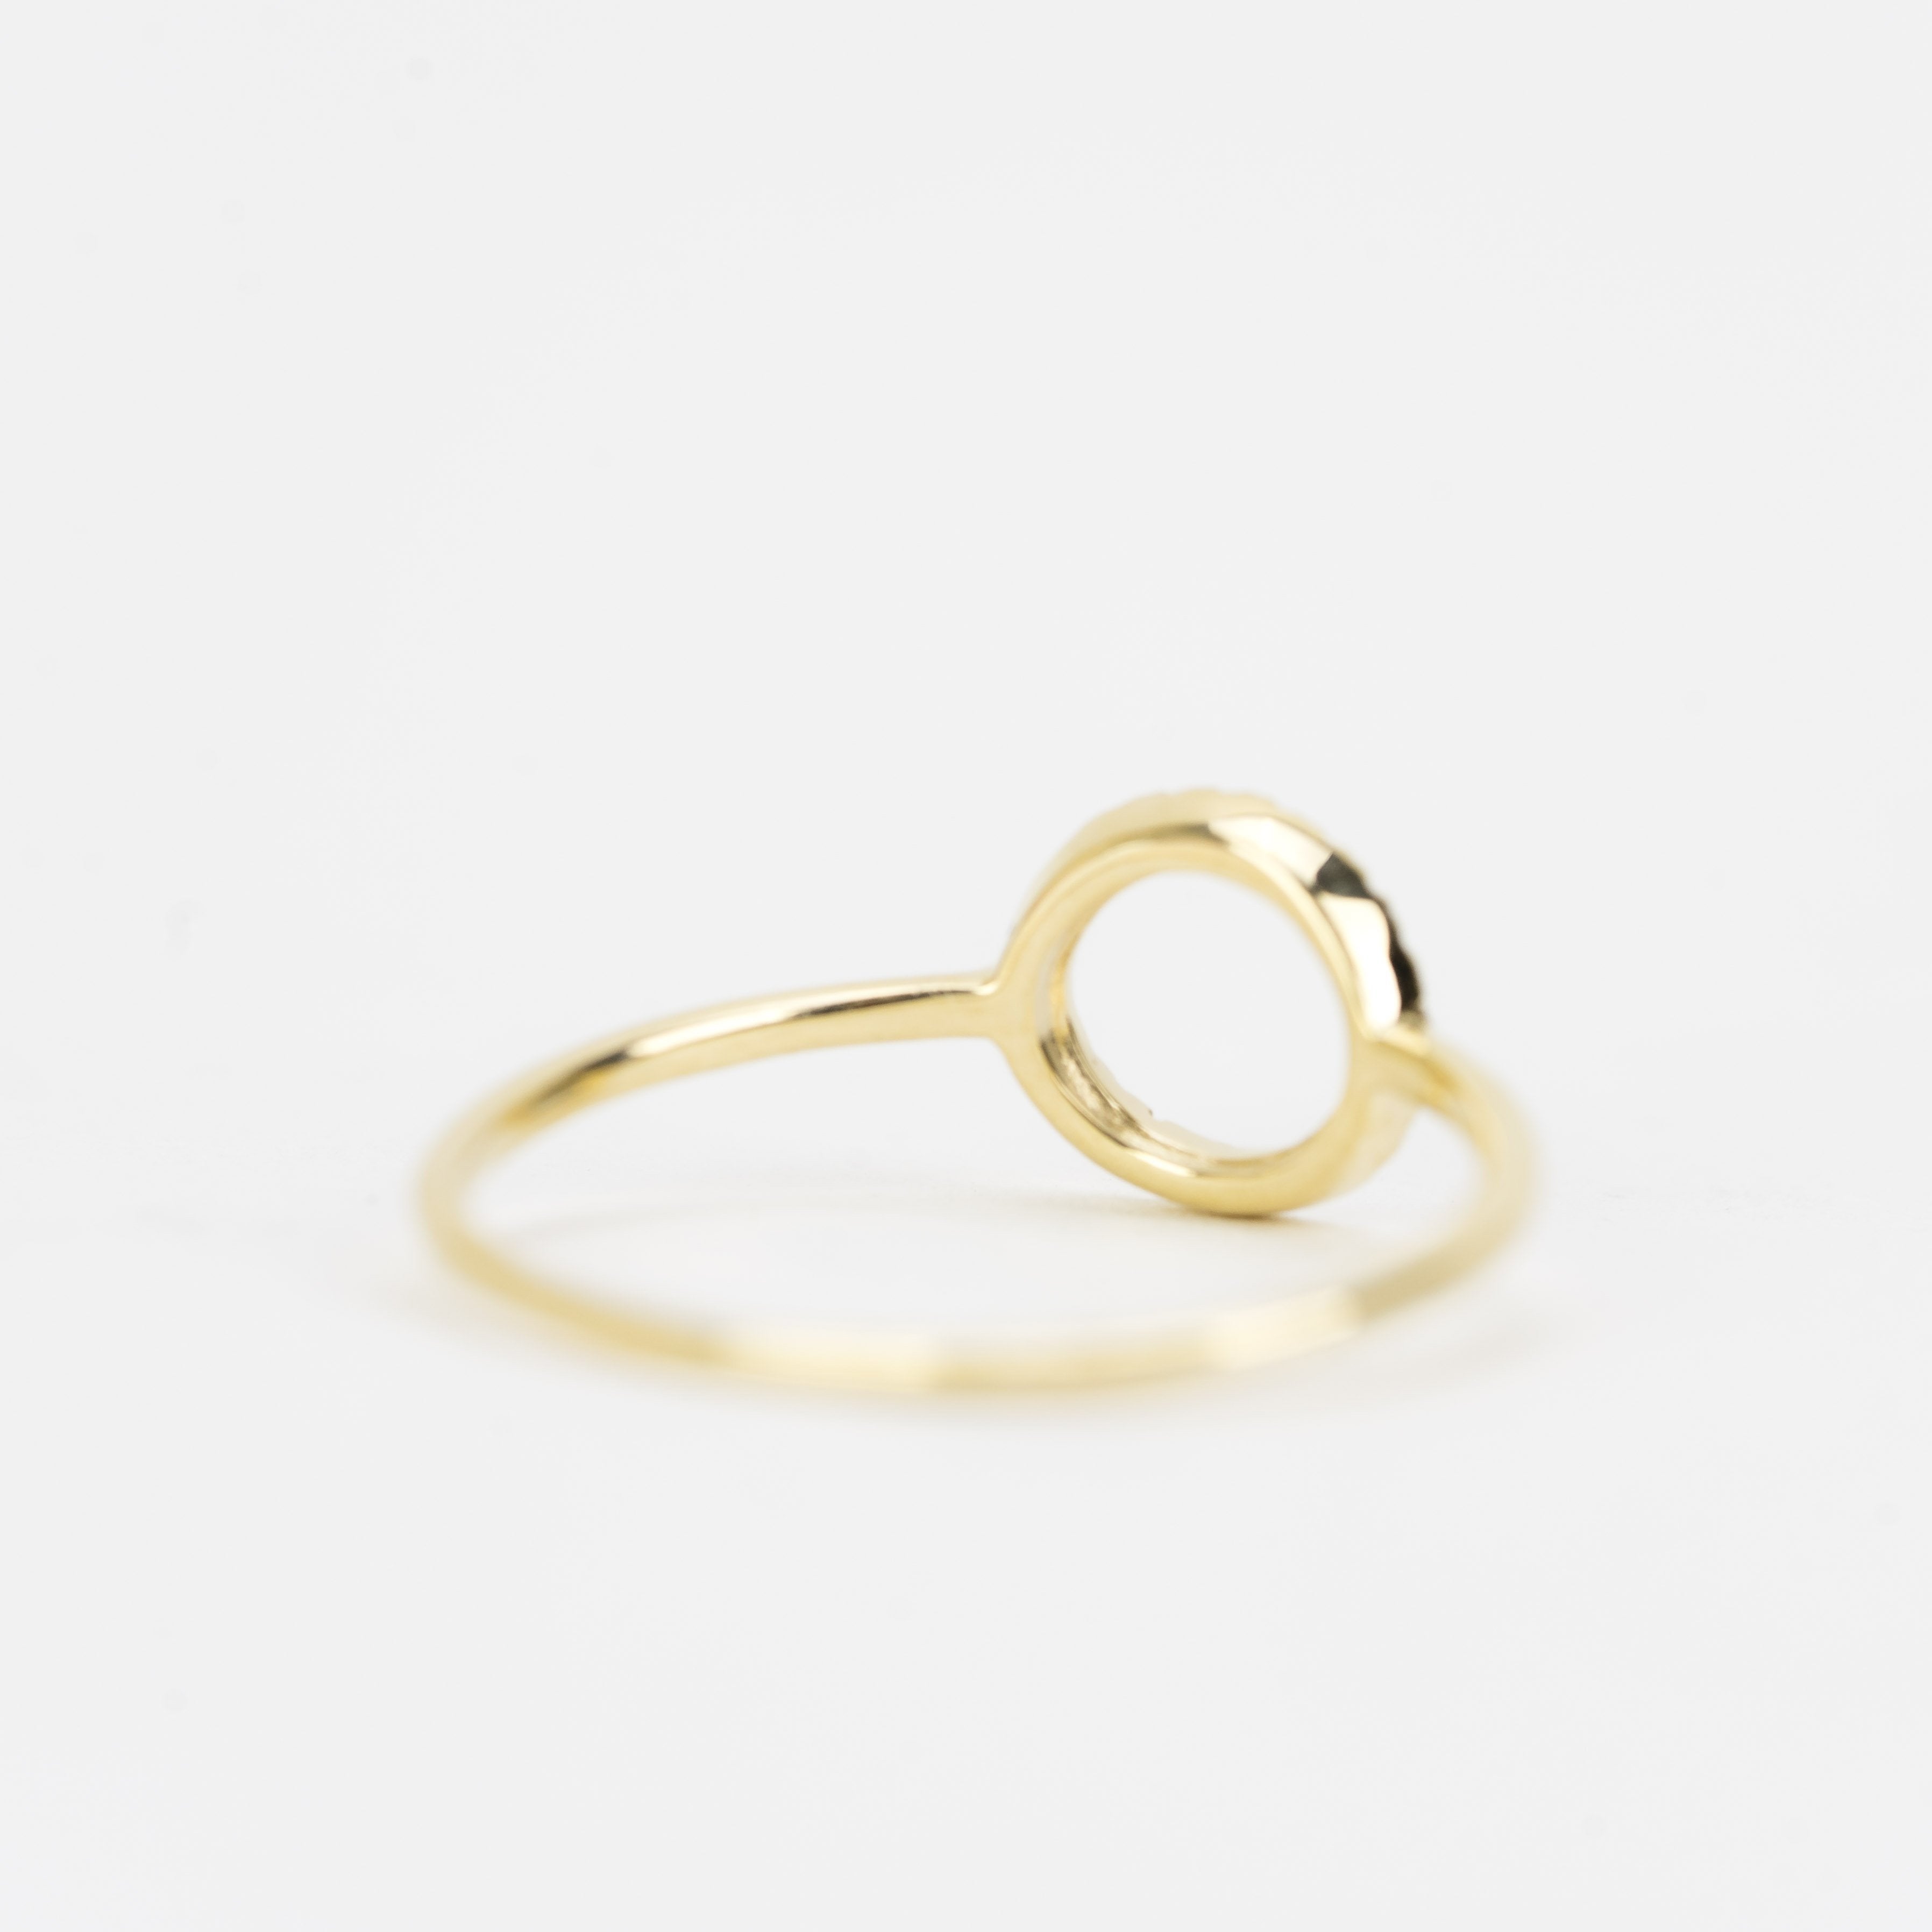 Halo Diamond Ring by Atheria Jewelry